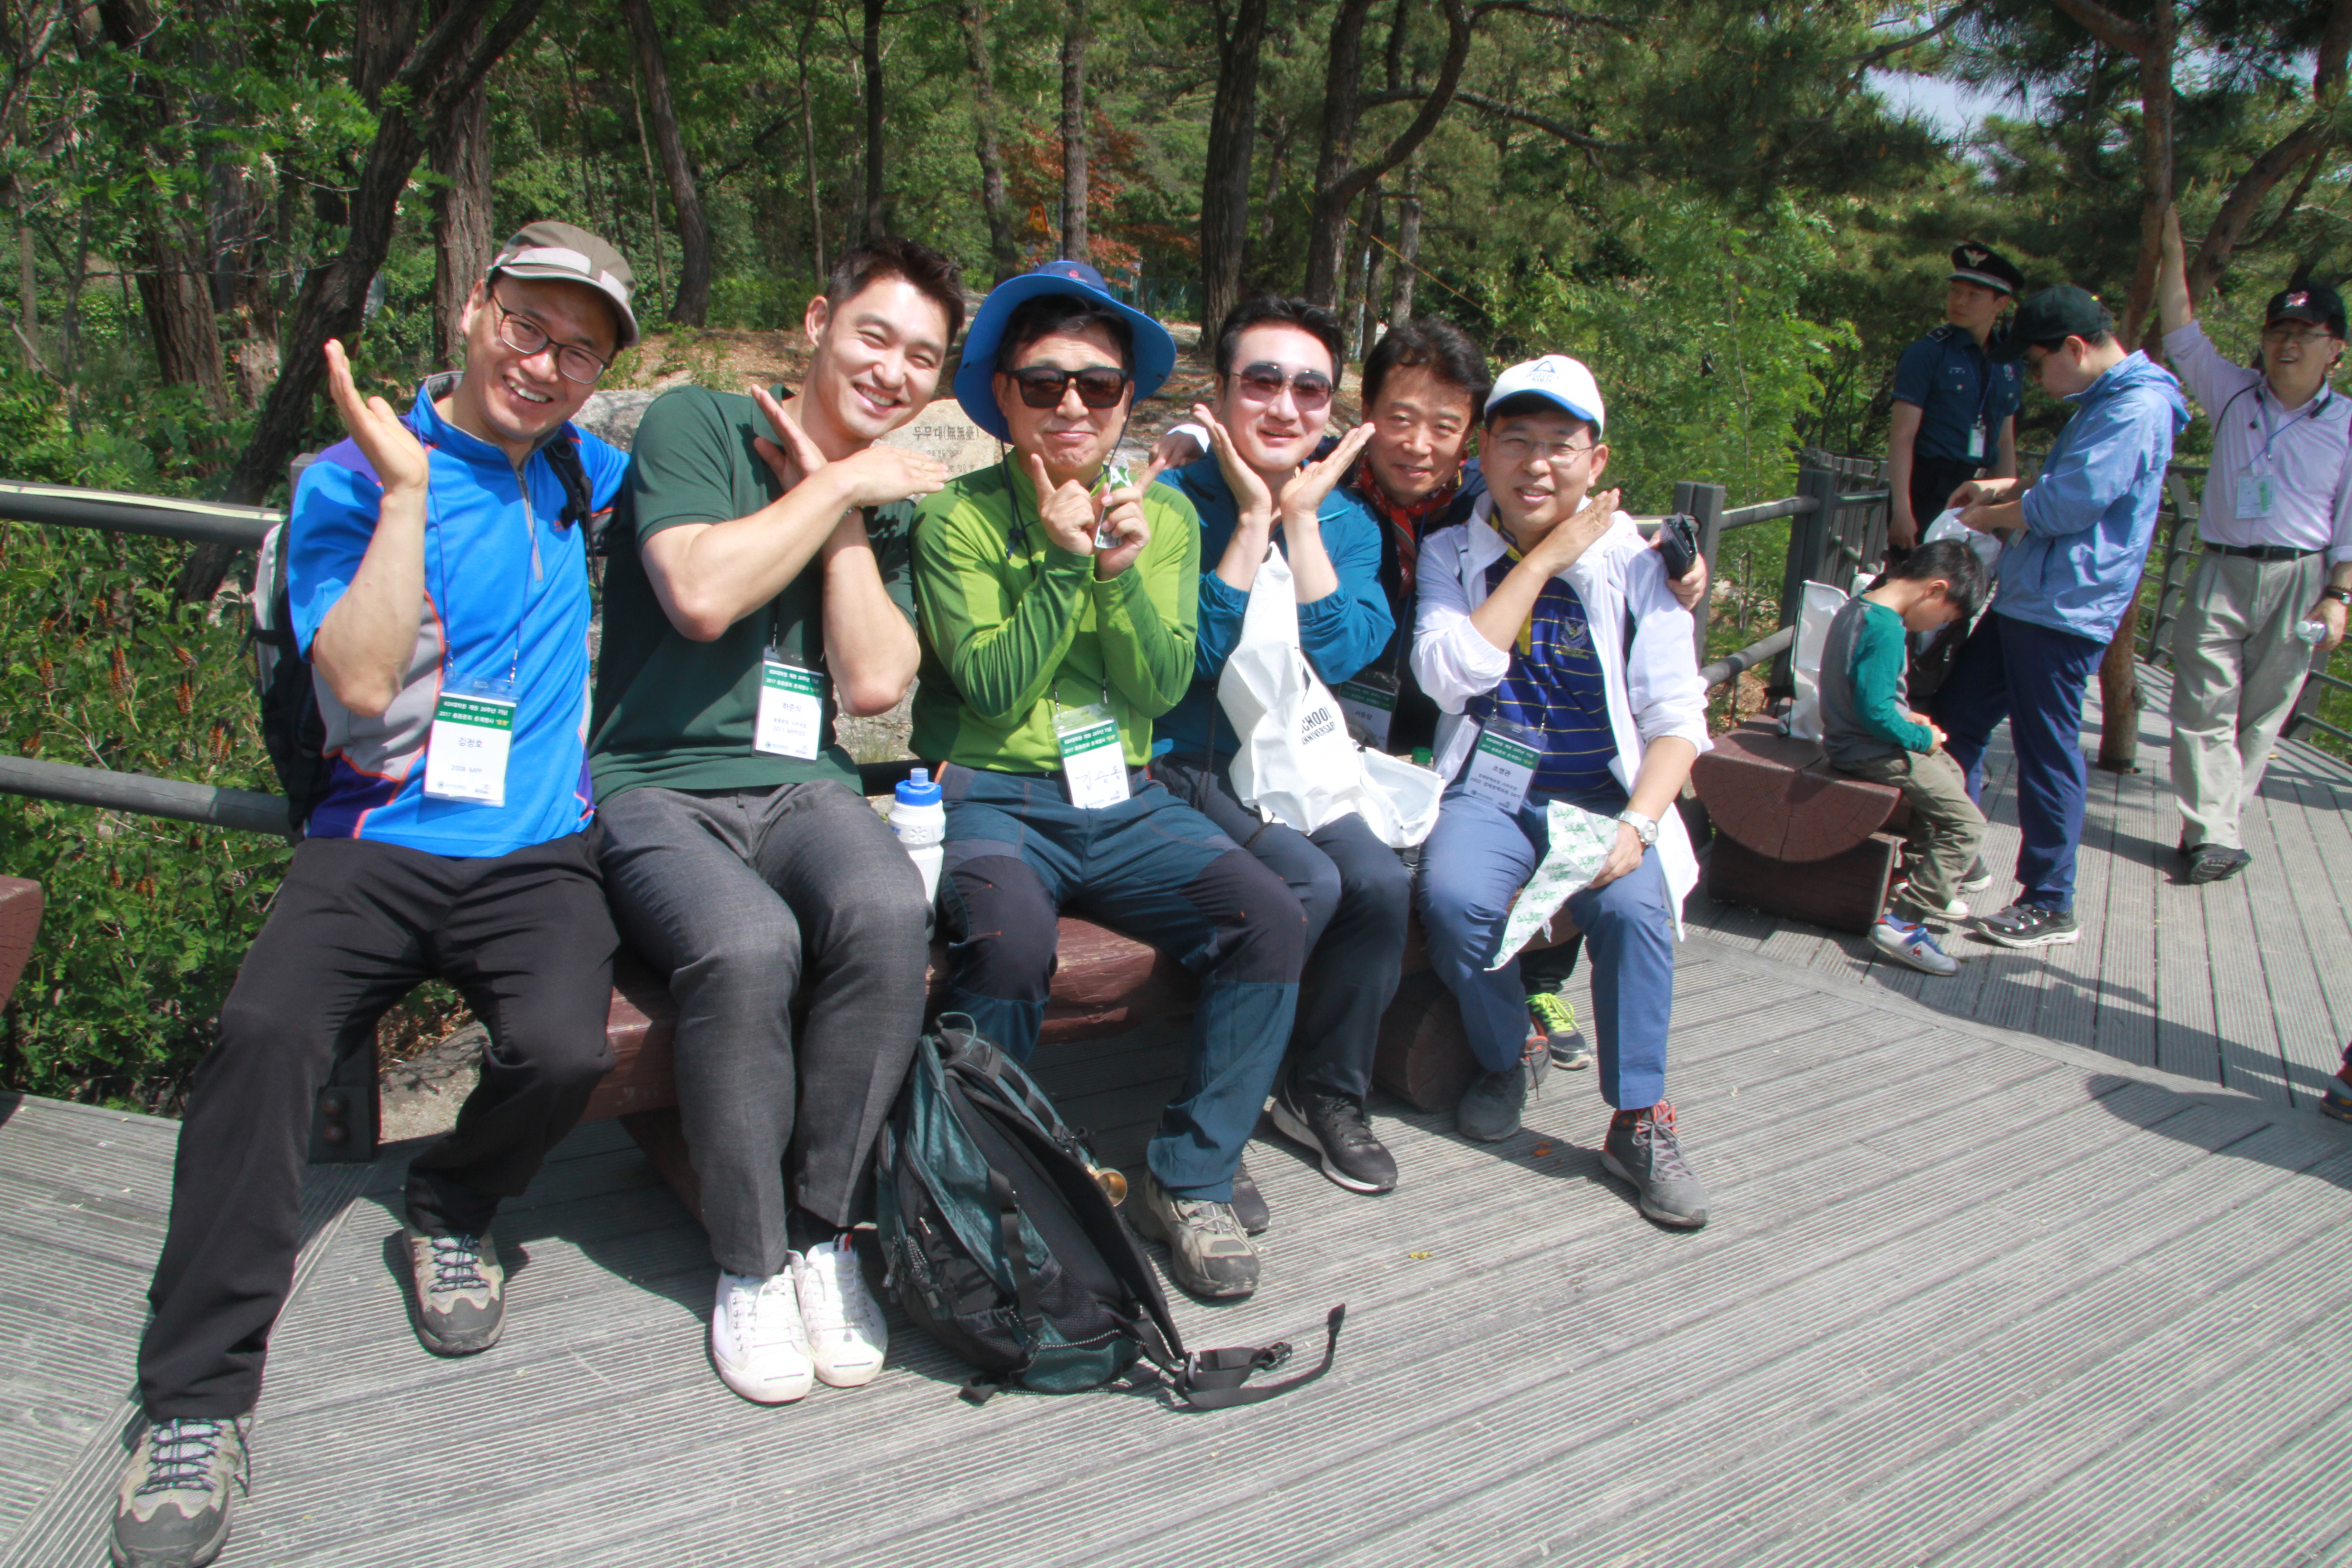 2017 KDI대학원 개원 20주년 기념 총동문회 춘계행사 “동행” / 2017 Alumni Spring Hiking Event “Companion”